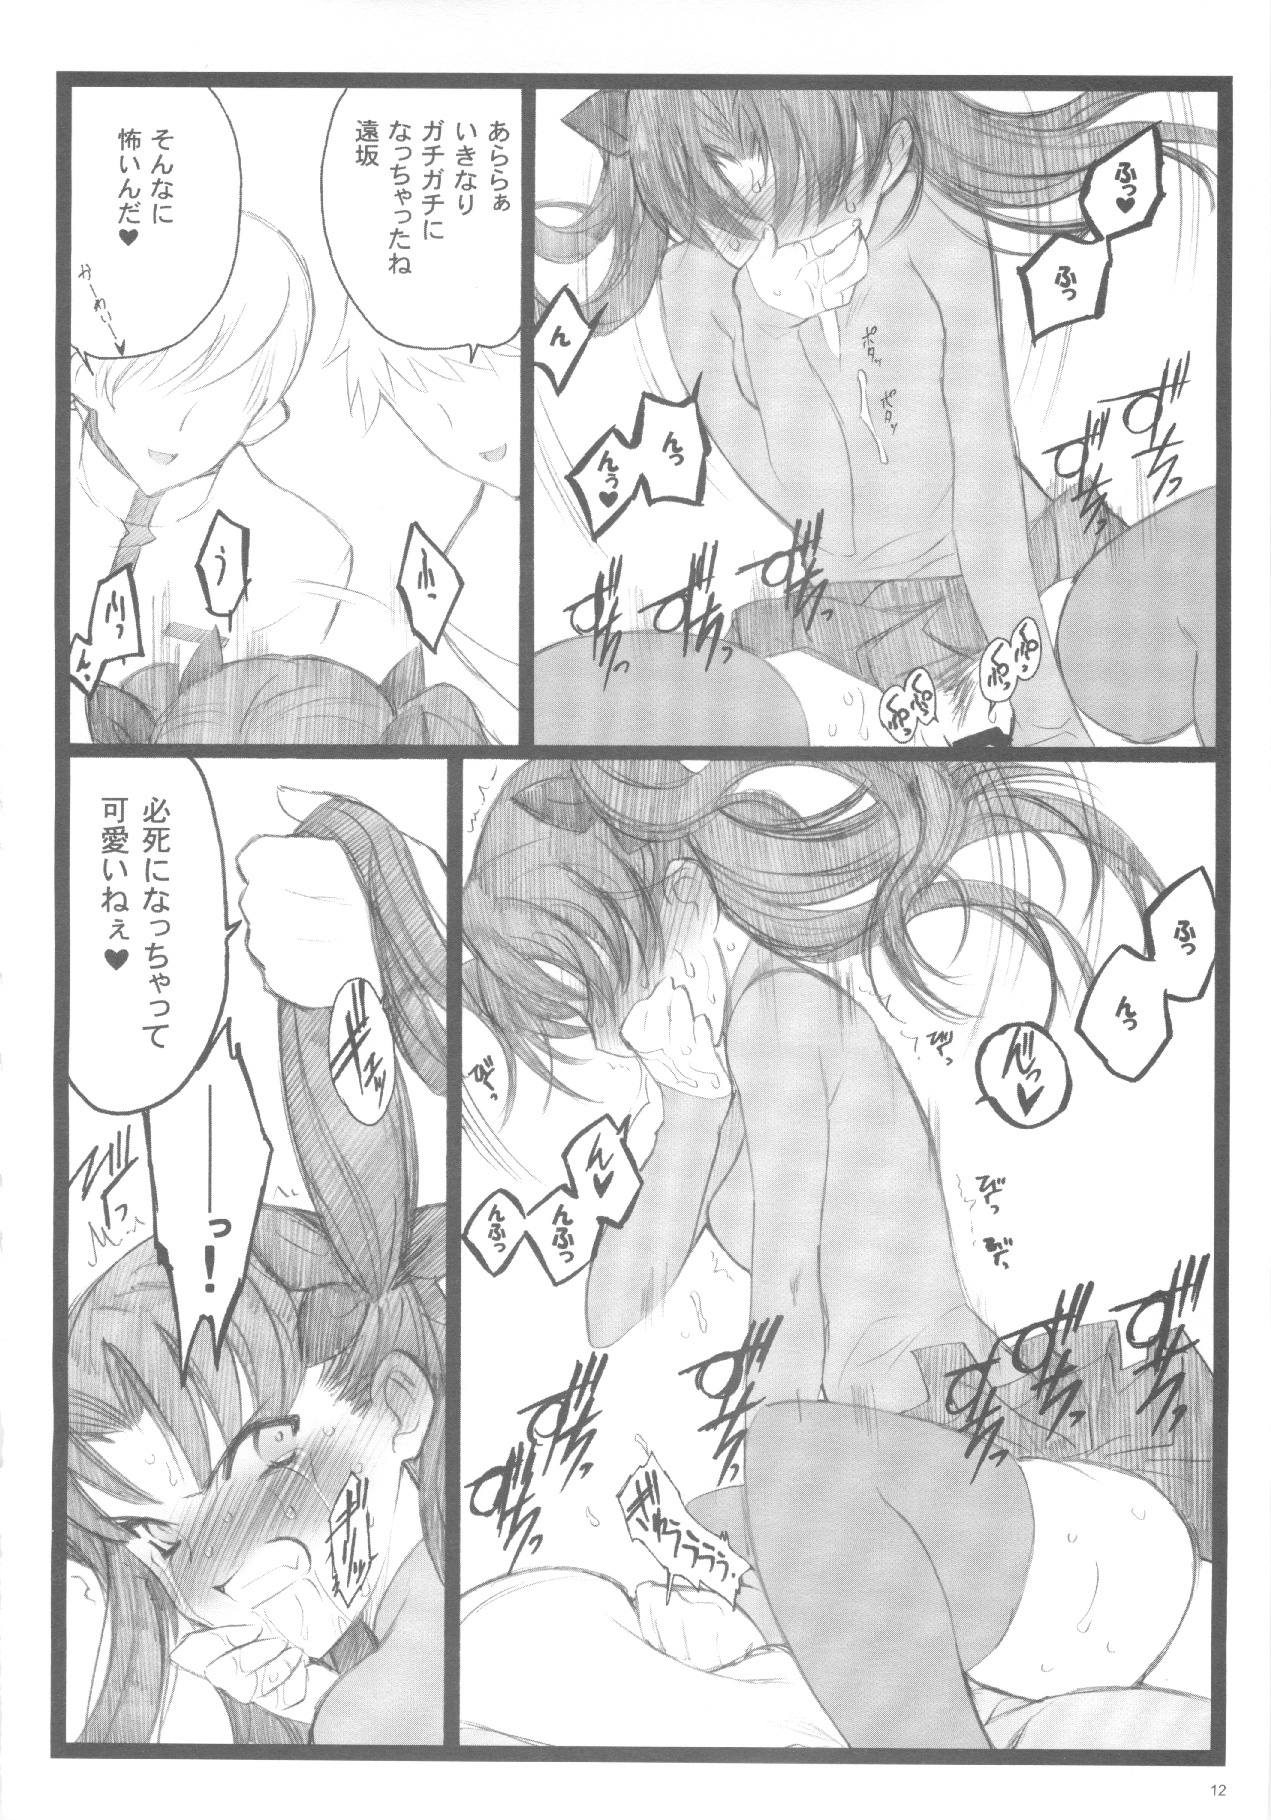 (C71) [Keumaya (Inoue Junichi)] Walpurugisnacht 3 / Walpurgis no Yoru 3 (Fate/stay night) page 11 full